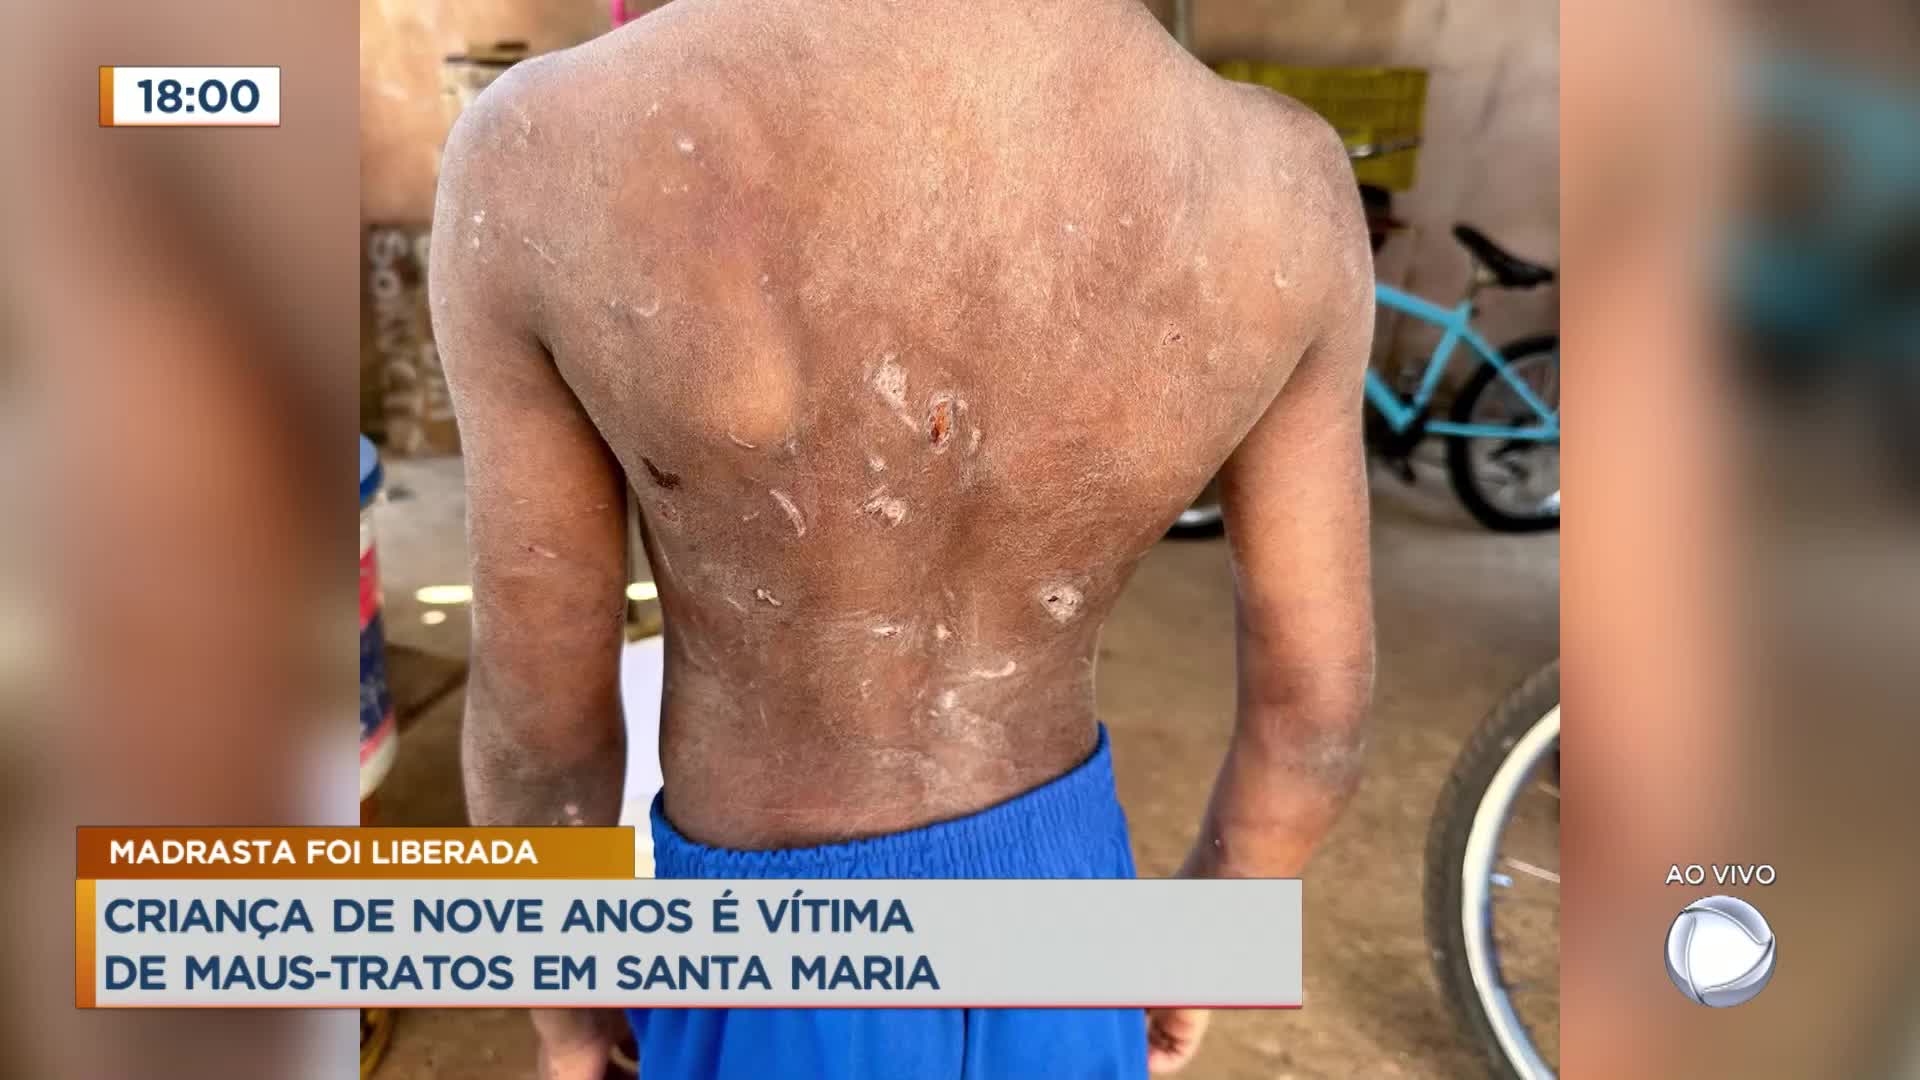 Vídeo: Criança de 9 anos é vítima de maus-tratos em Santa Maria (DF)